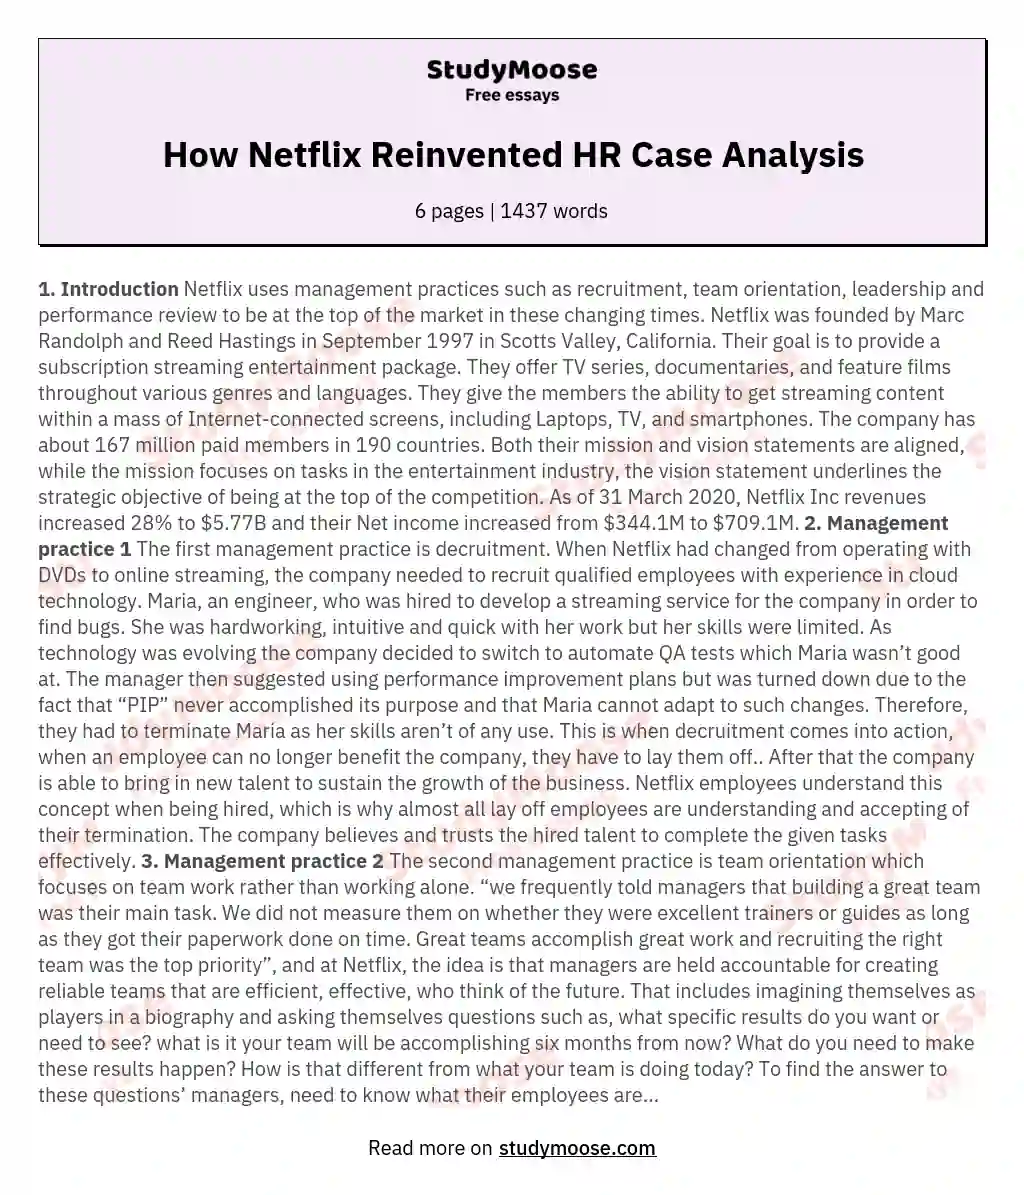 How Netflix Reinvented HR Case Analysis essay